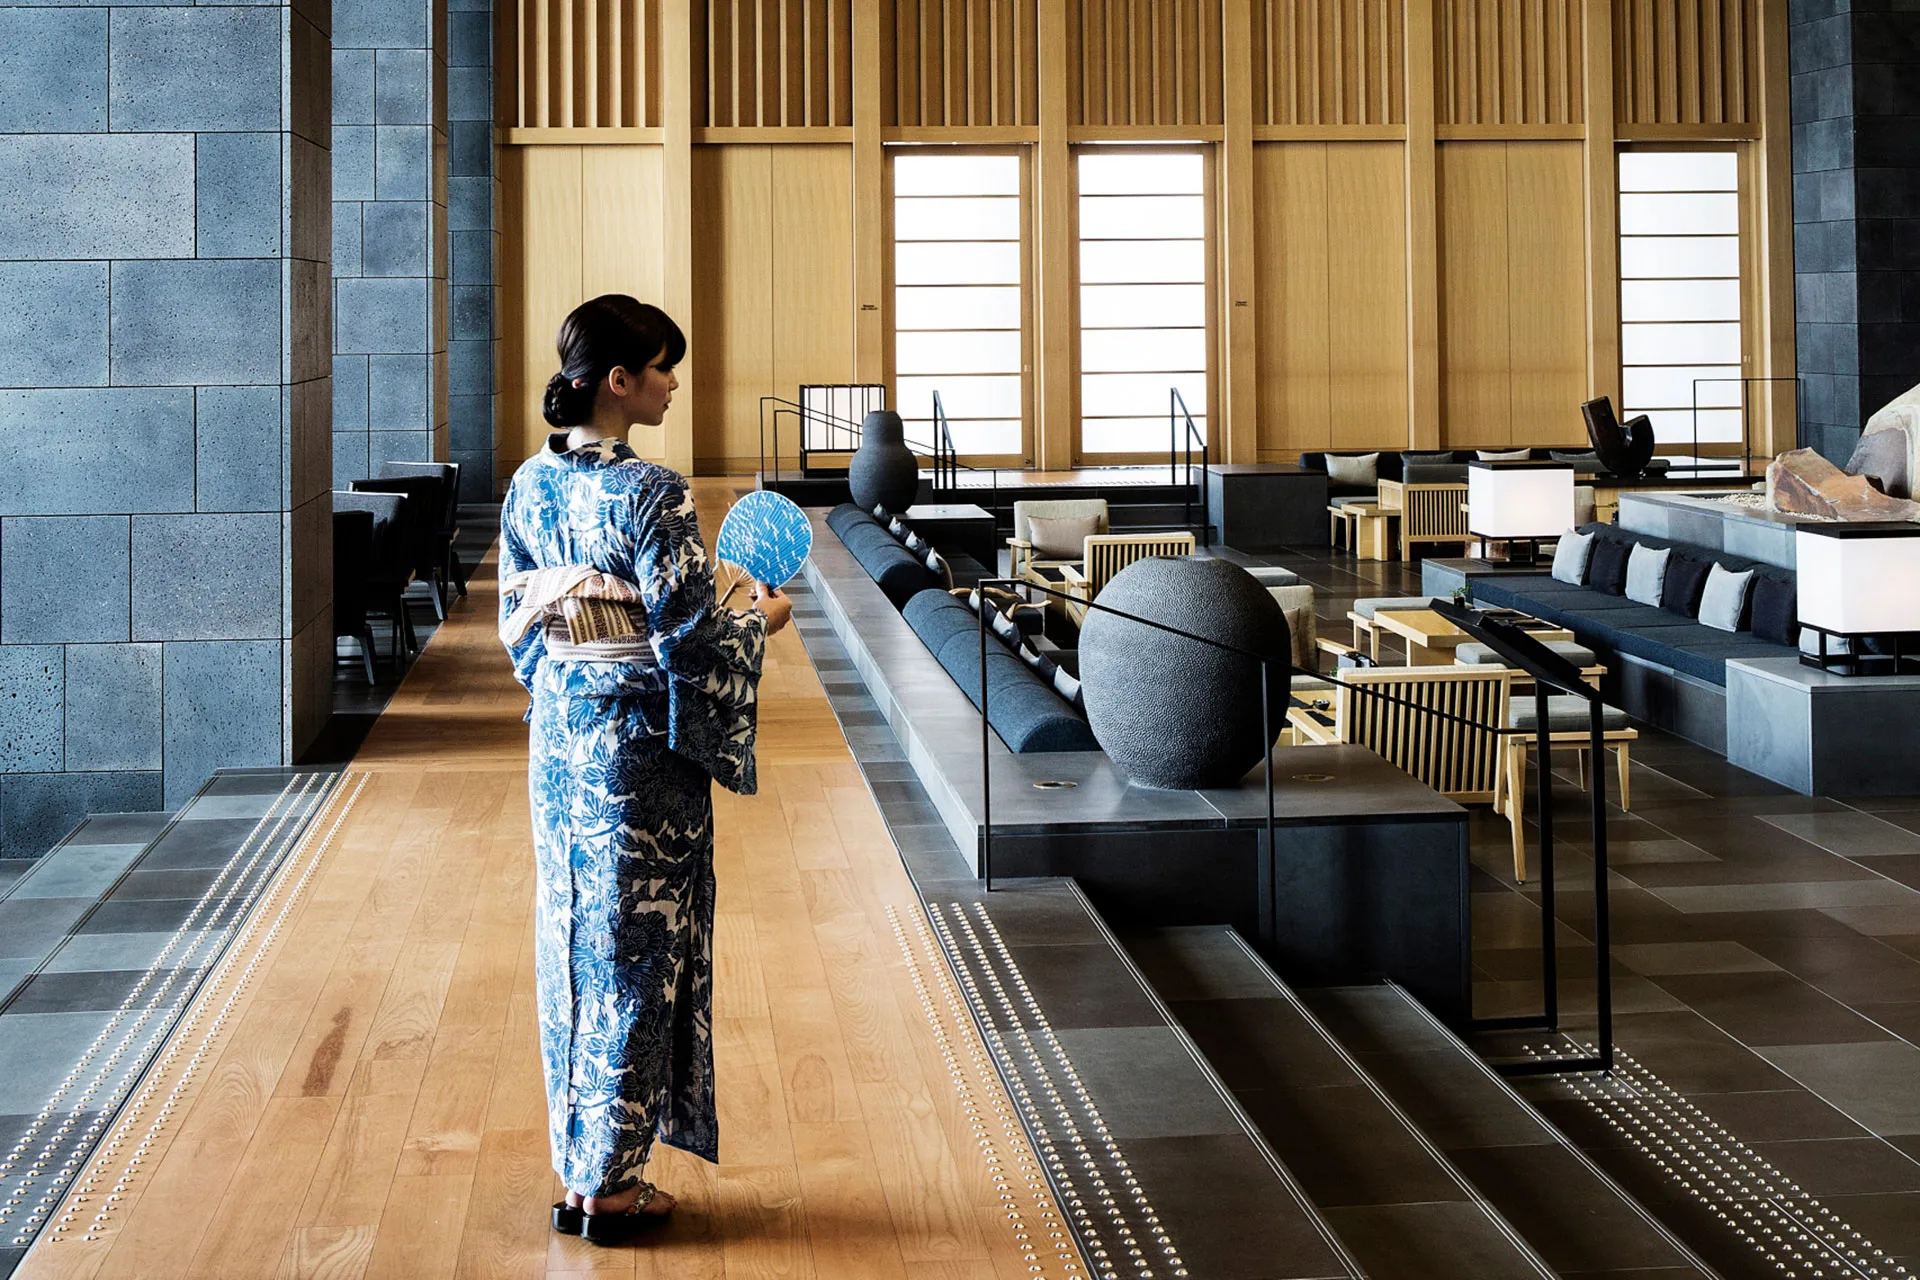 Frau in japanischem Gewand geht durch Lounge